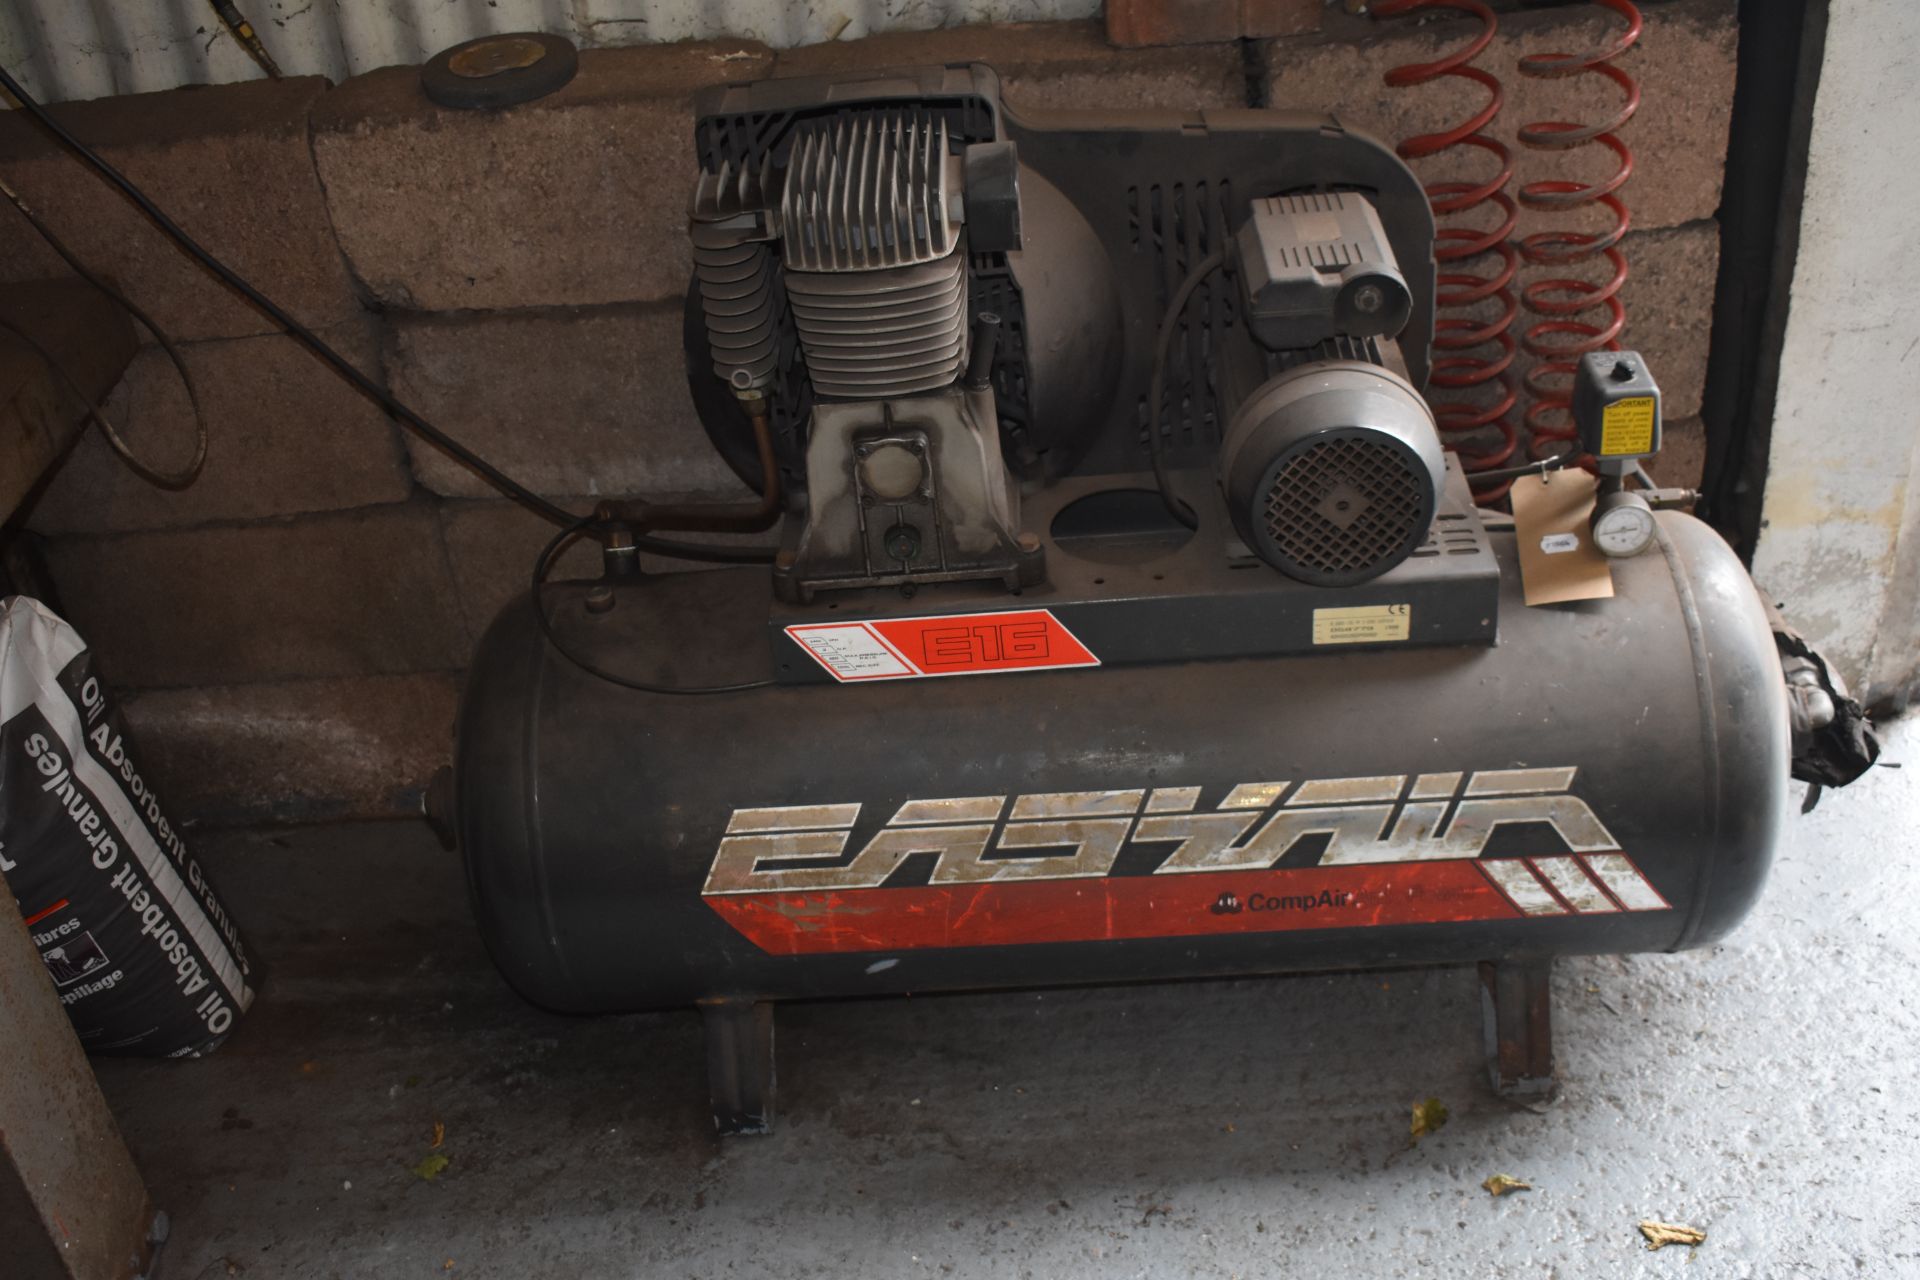 An EASYAIR E16 Compair compressor